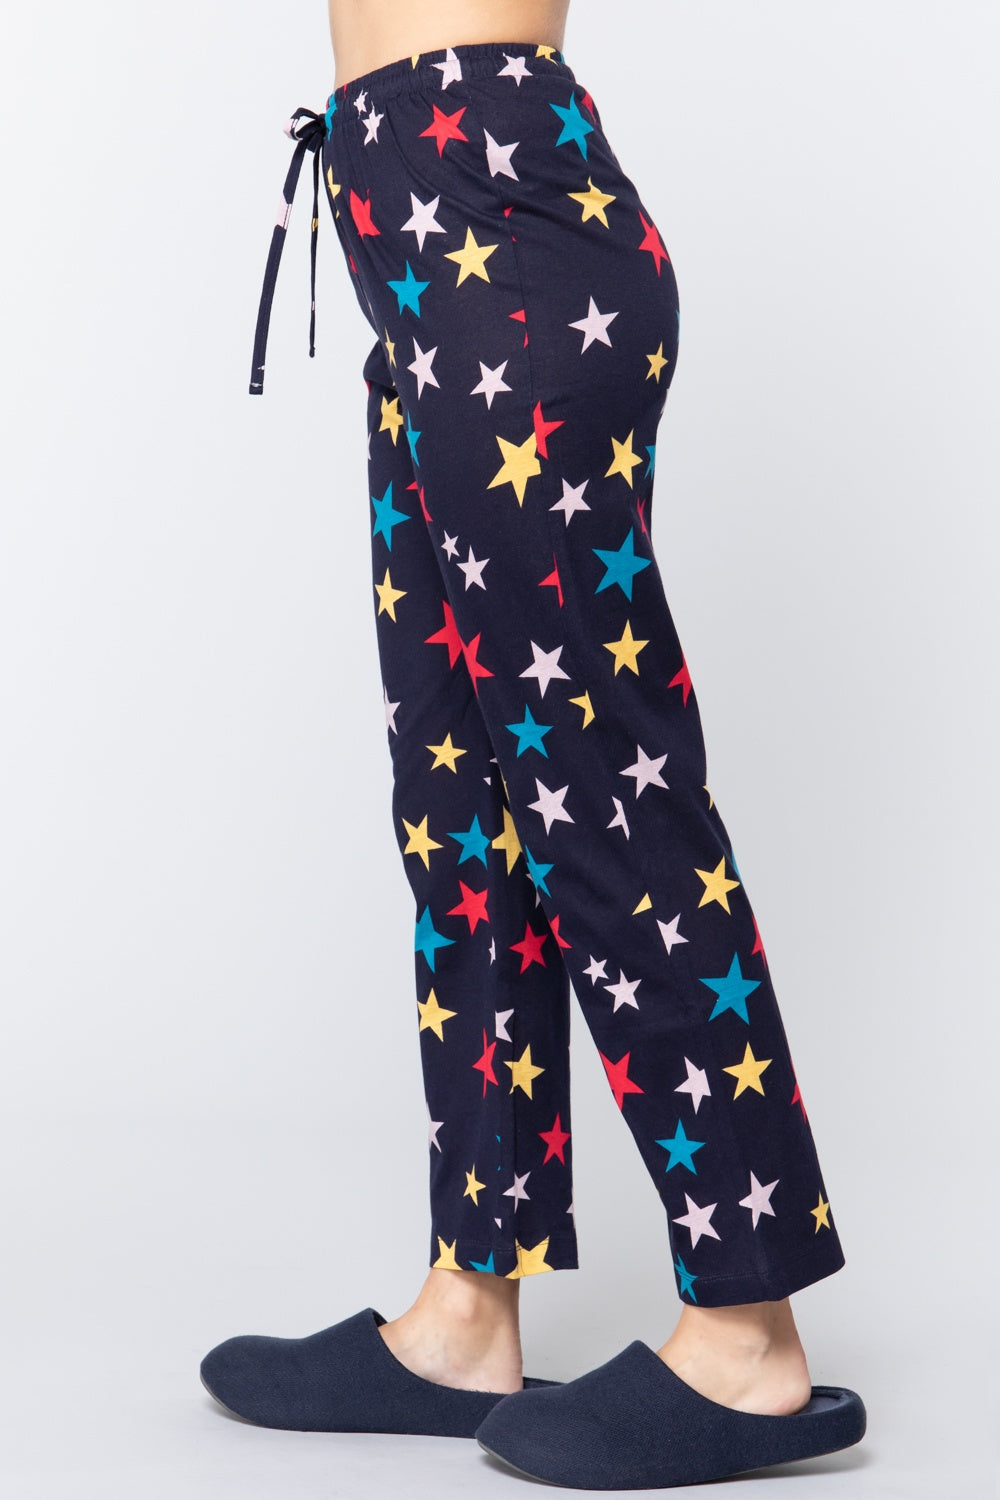 Star Print Cotton Women's Pajama